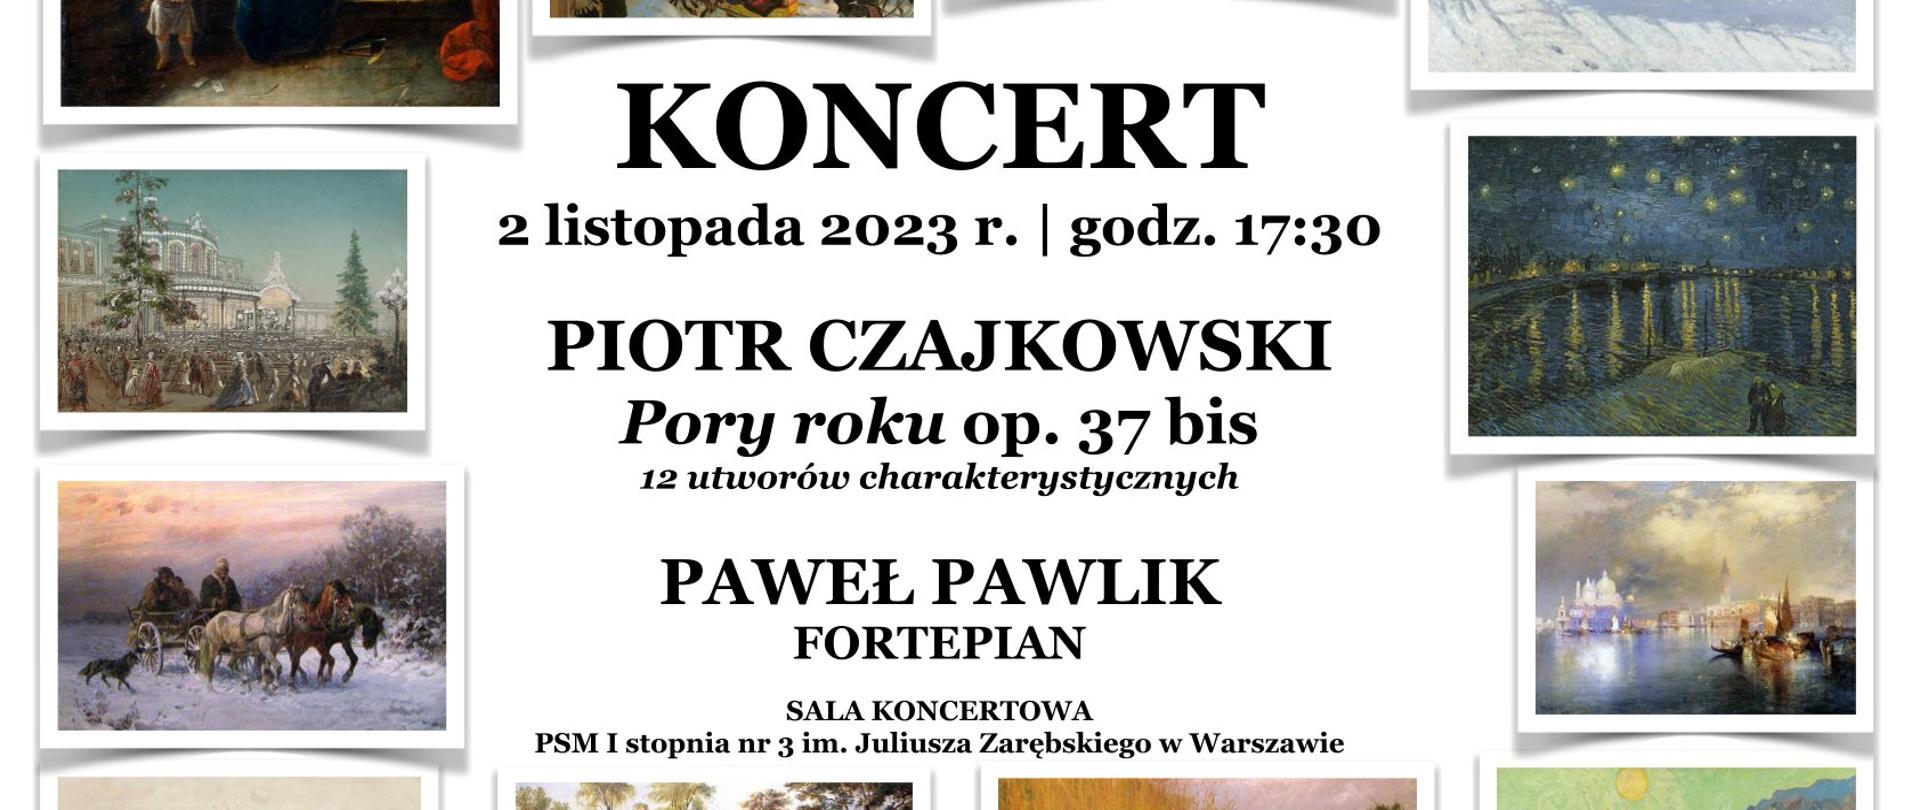 plakat - na białym tle na środku czarny napis informujący o koncercie, otoczony zdjęciami przedstawiającymi różne pory roku